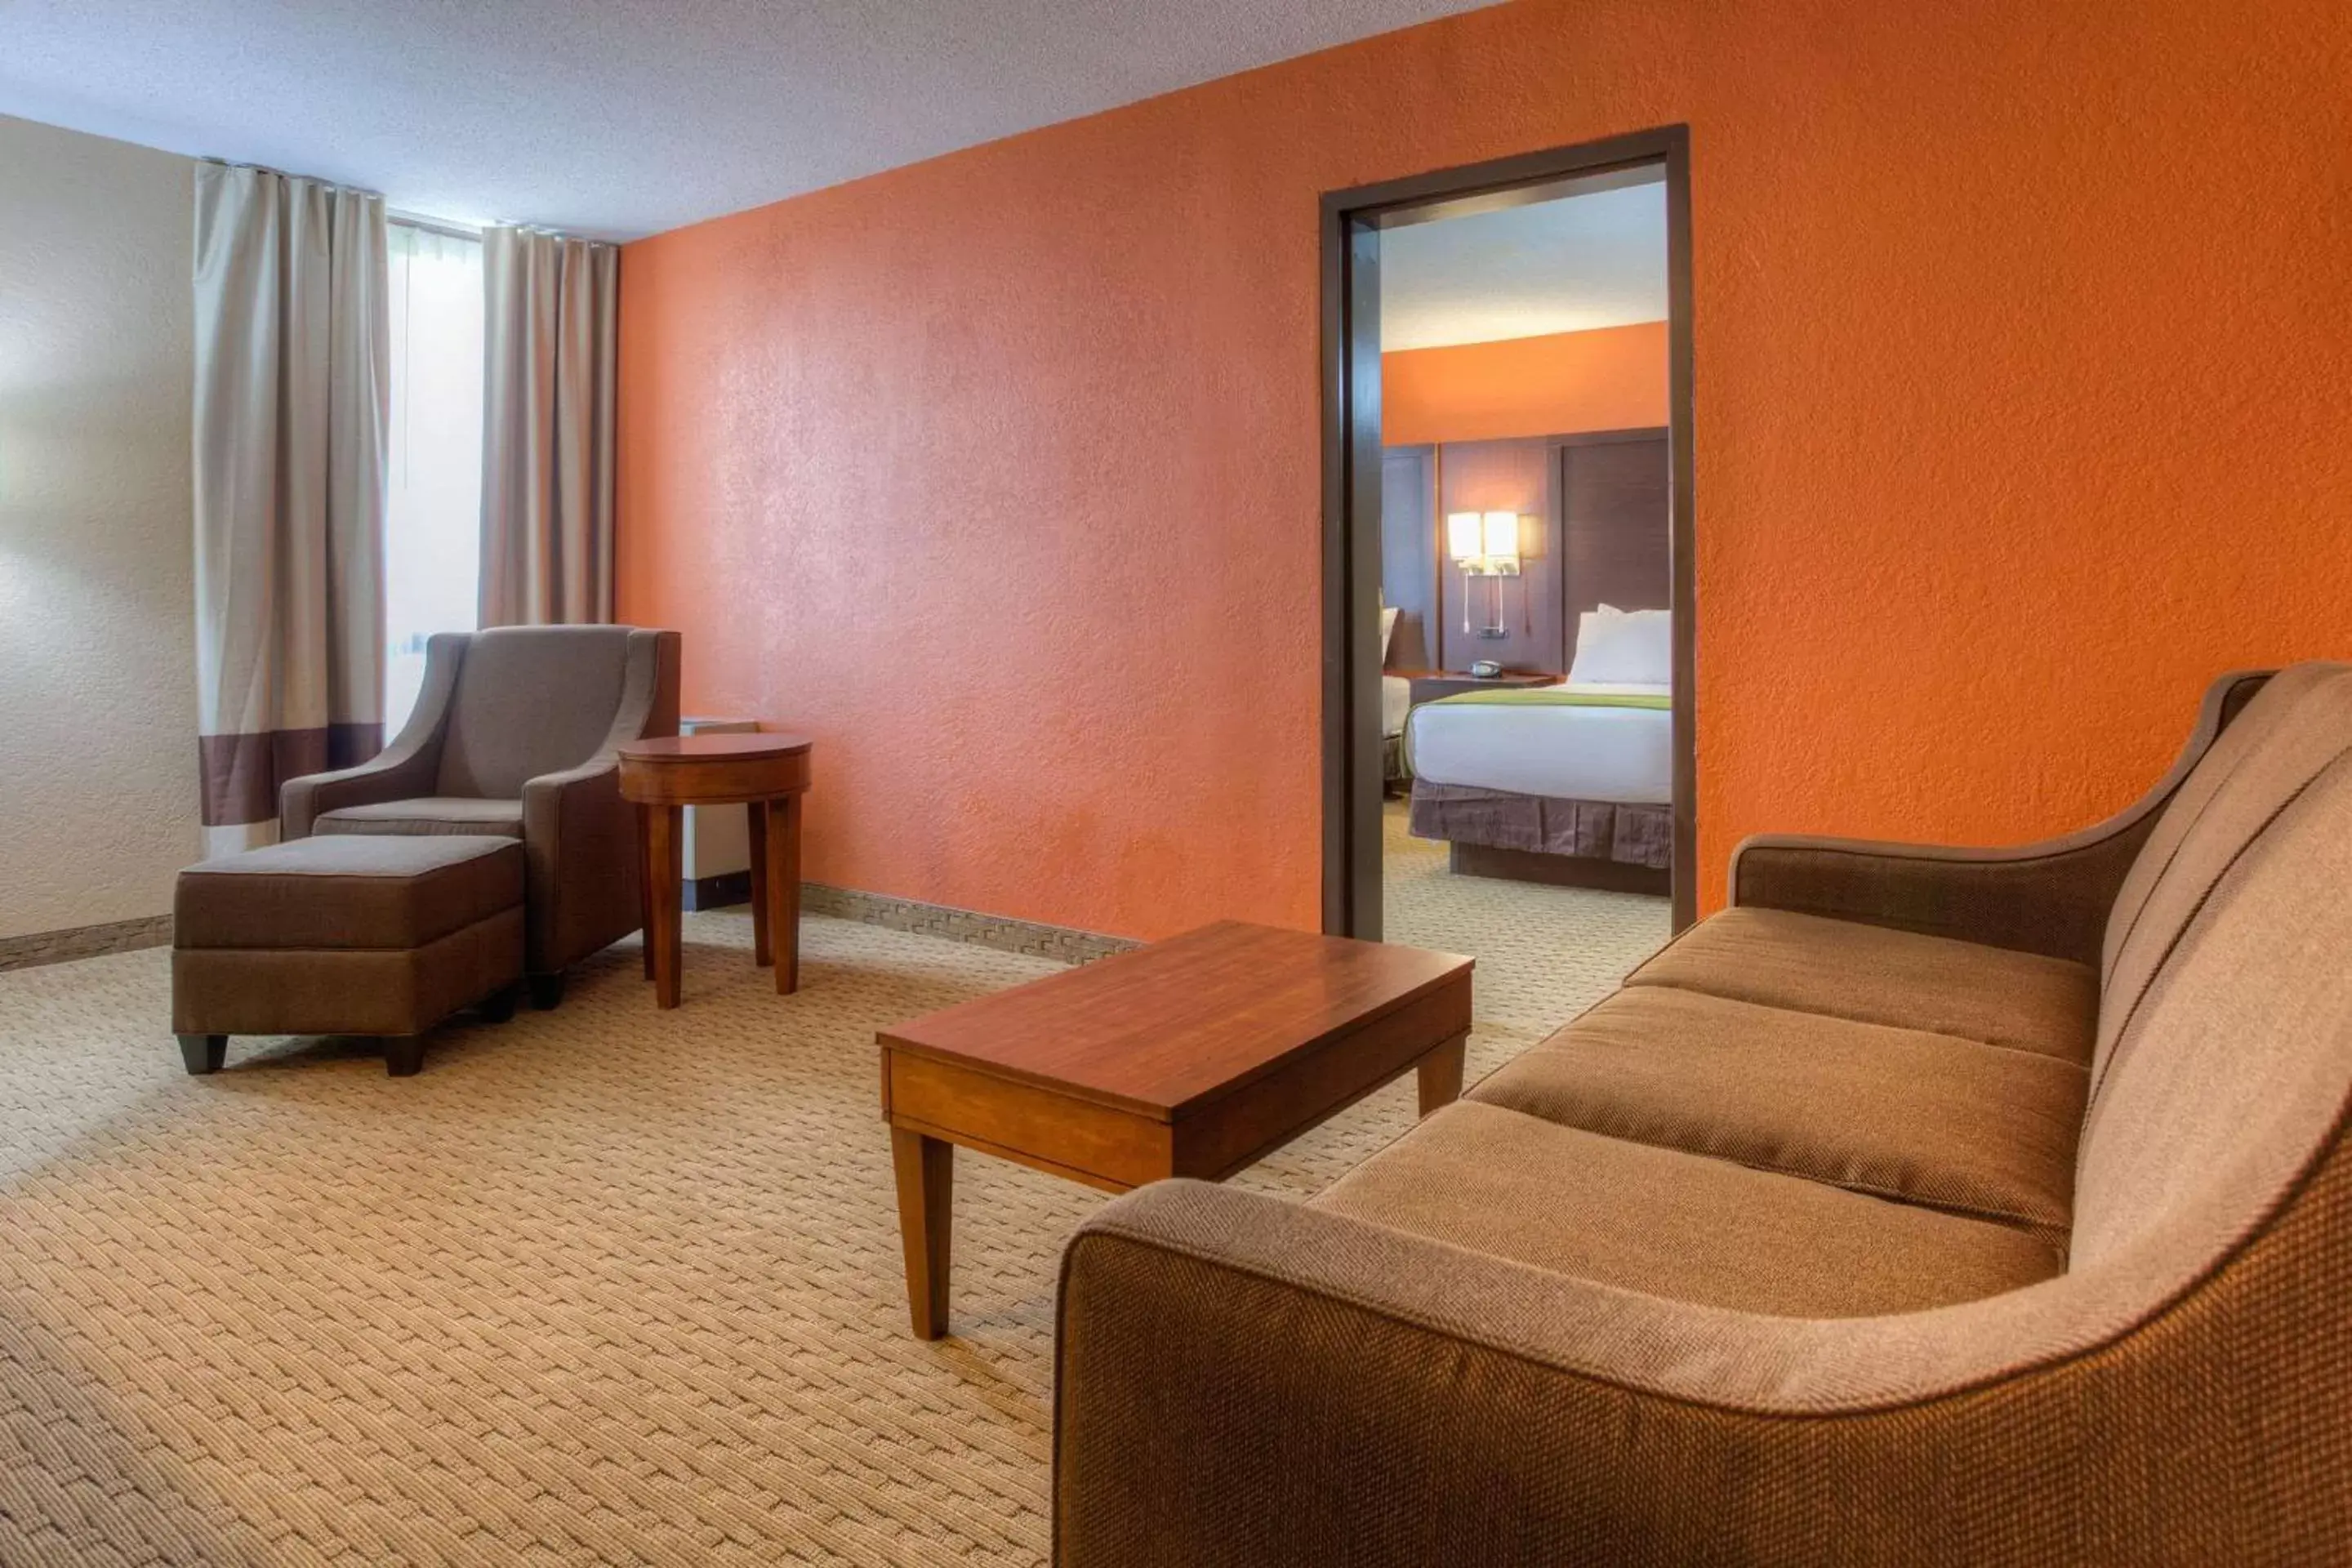 Bedroom, Seating Area in Comfort Inn & Suites Evansville Airport